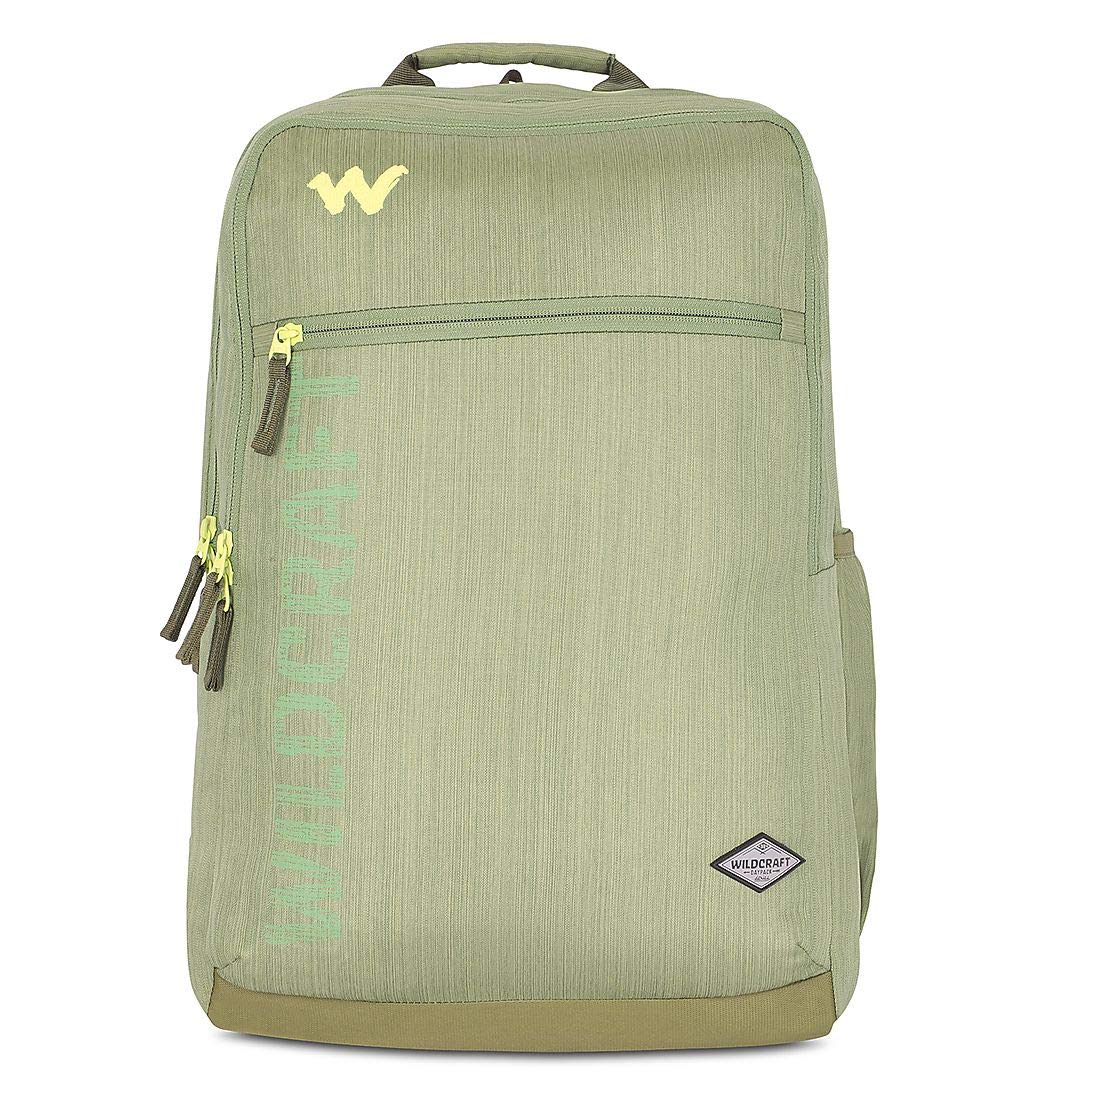 Wildcraft Evo 1 34.5L Backpack Melange Green